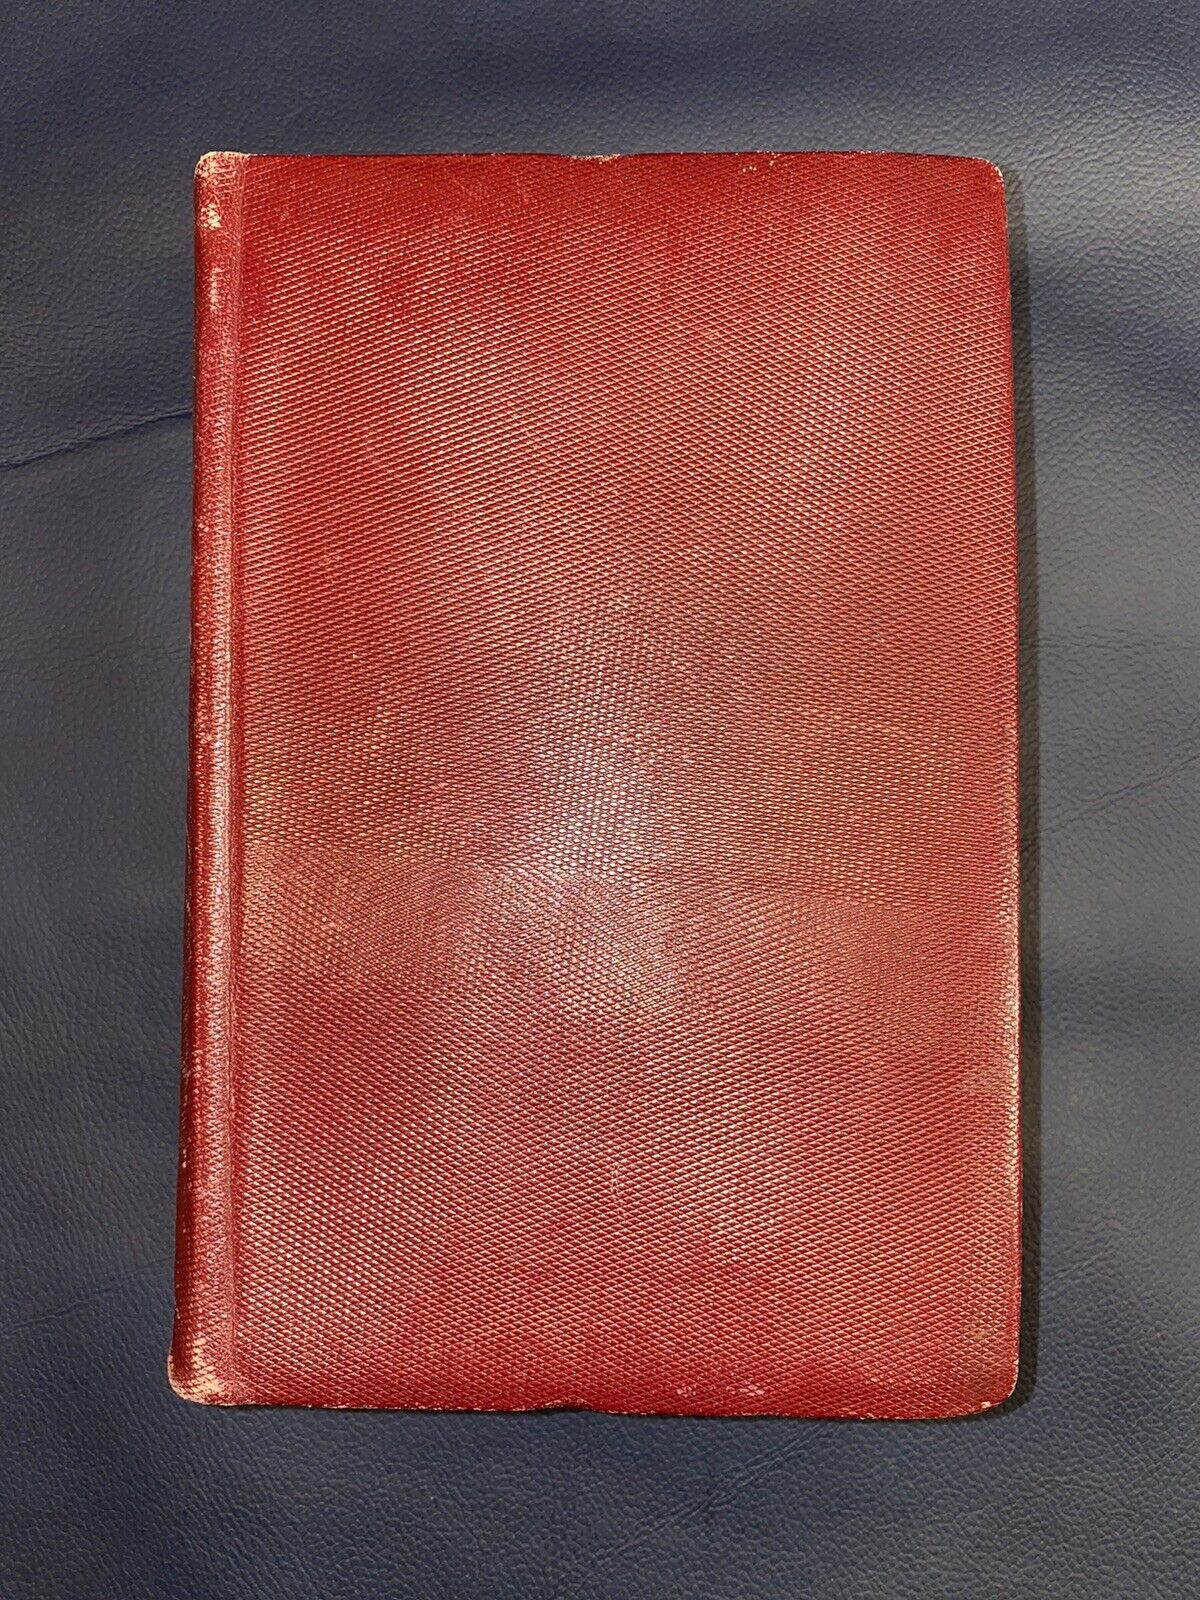 Sagrada Biblia 1953 (Bover-Cantera) Tercera Edición, Editorial B.A.C.